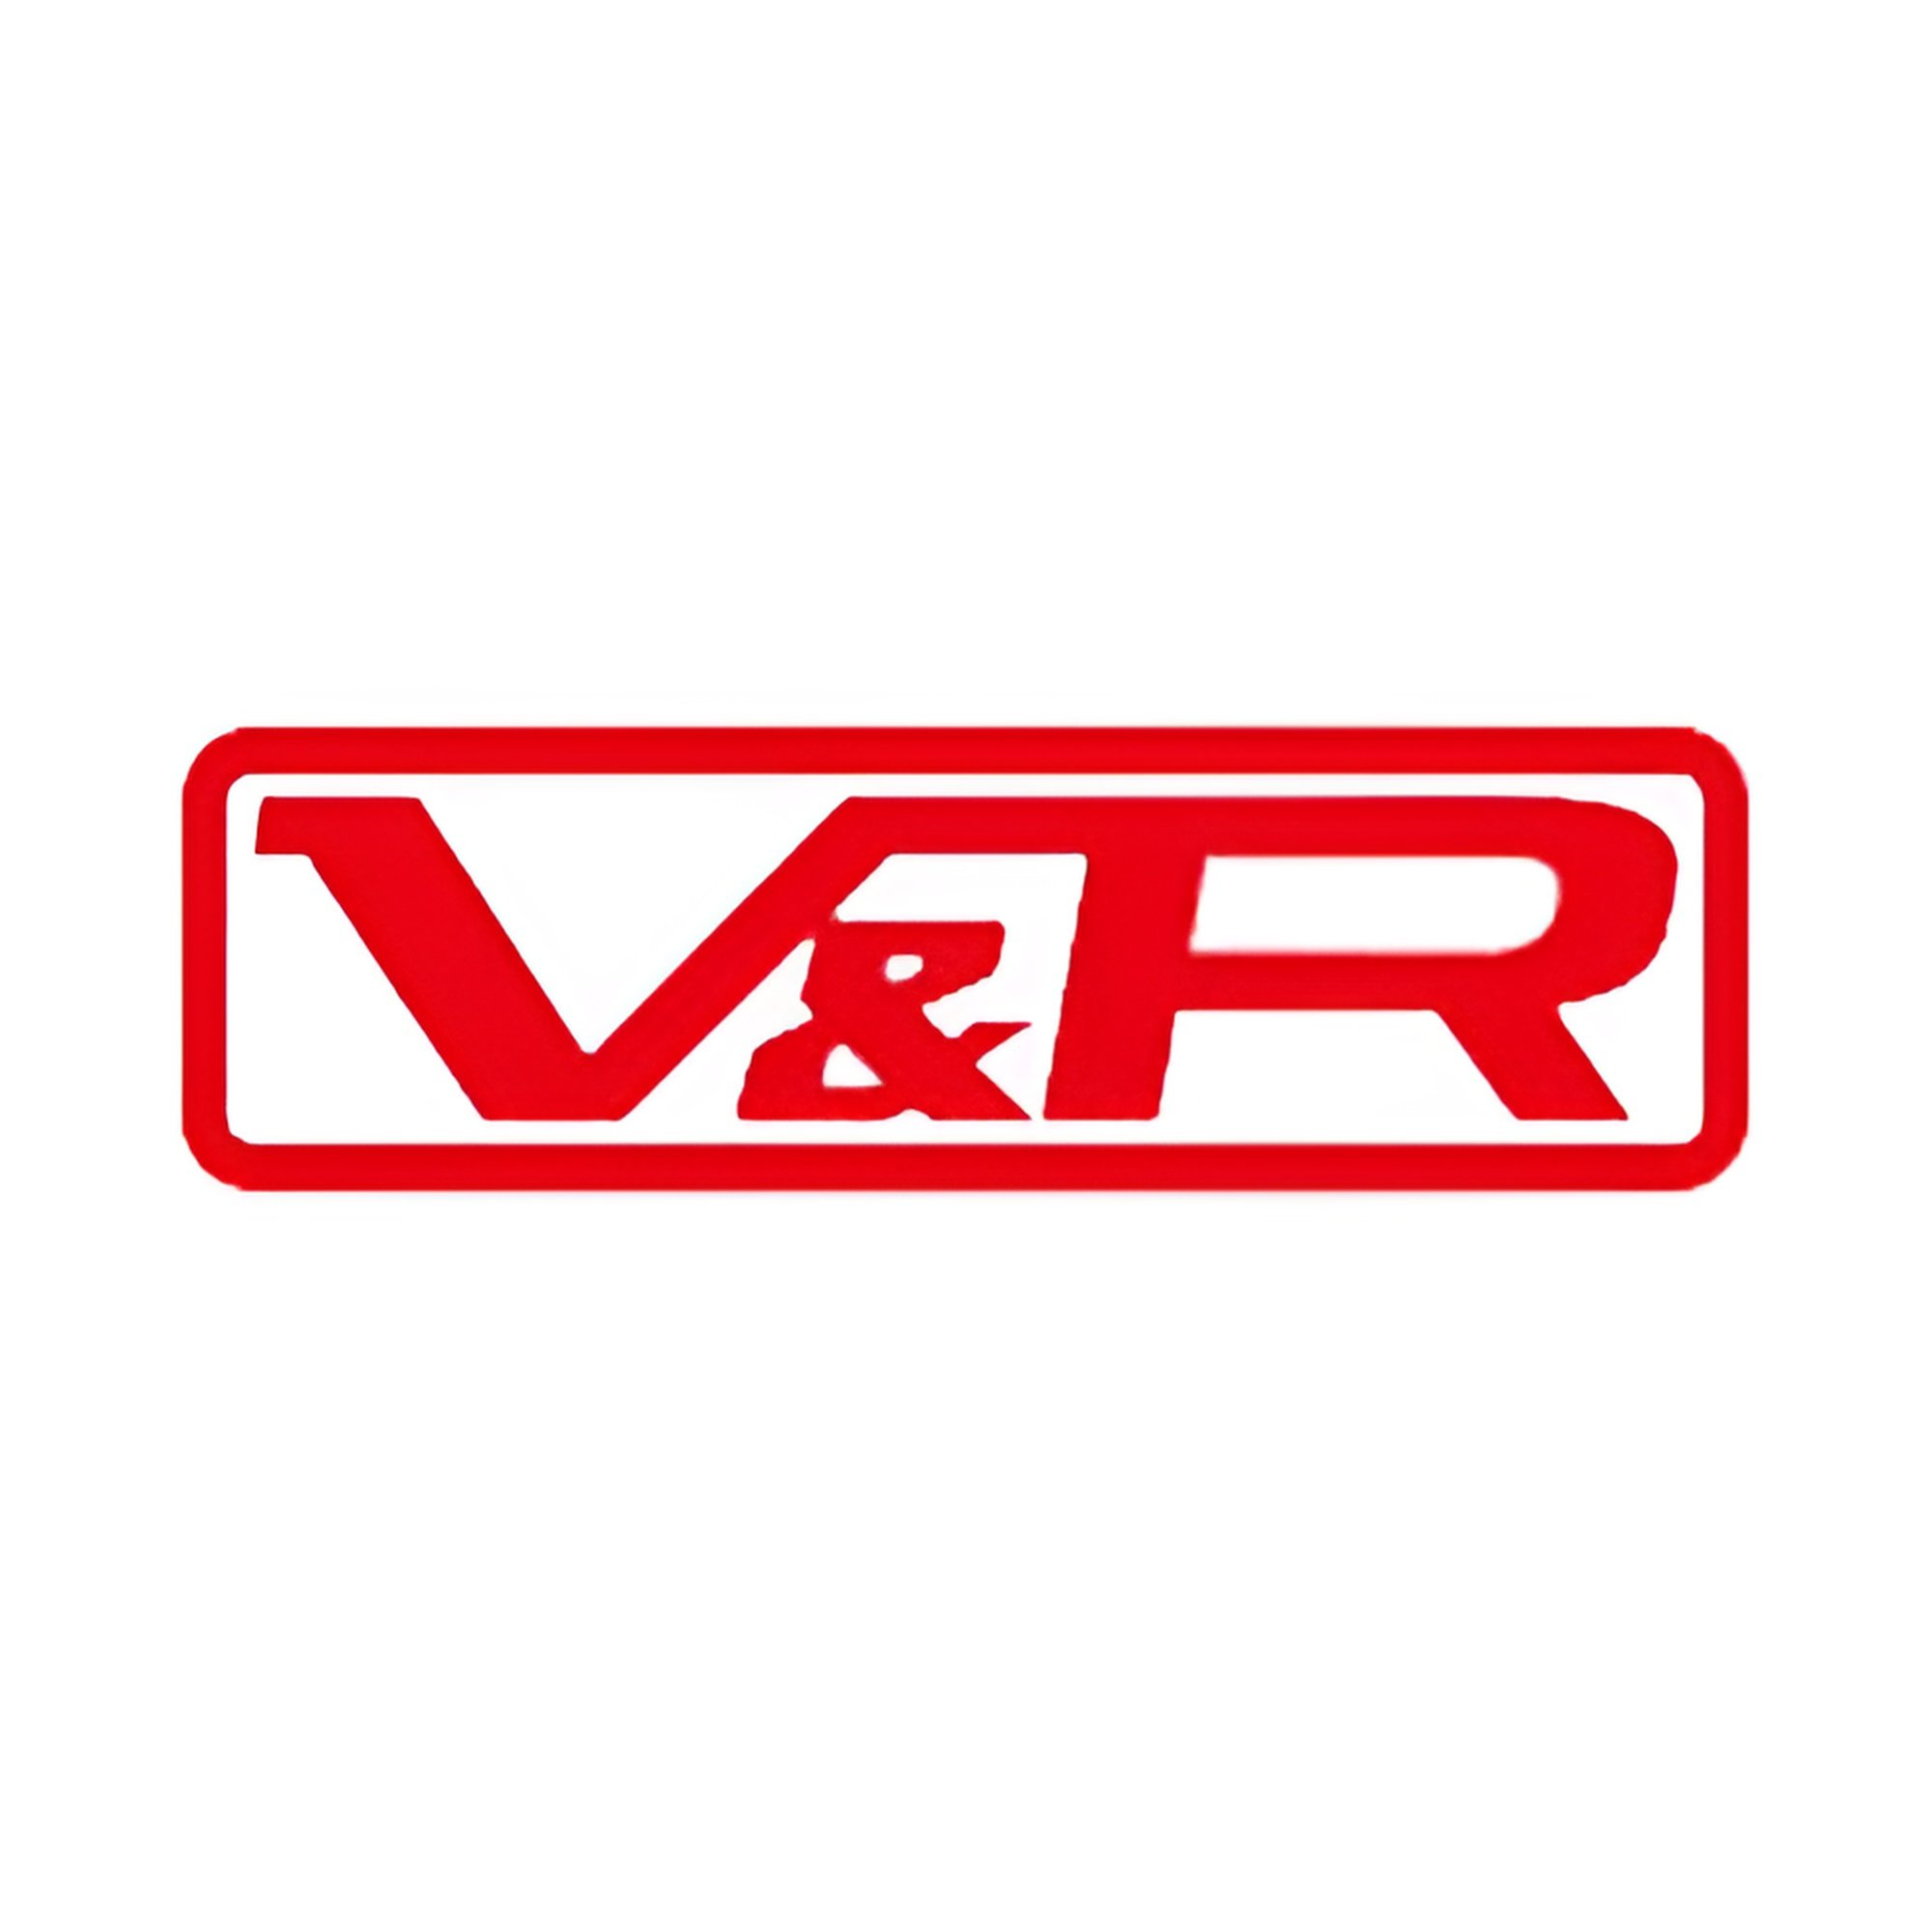 V&R PRODUCE